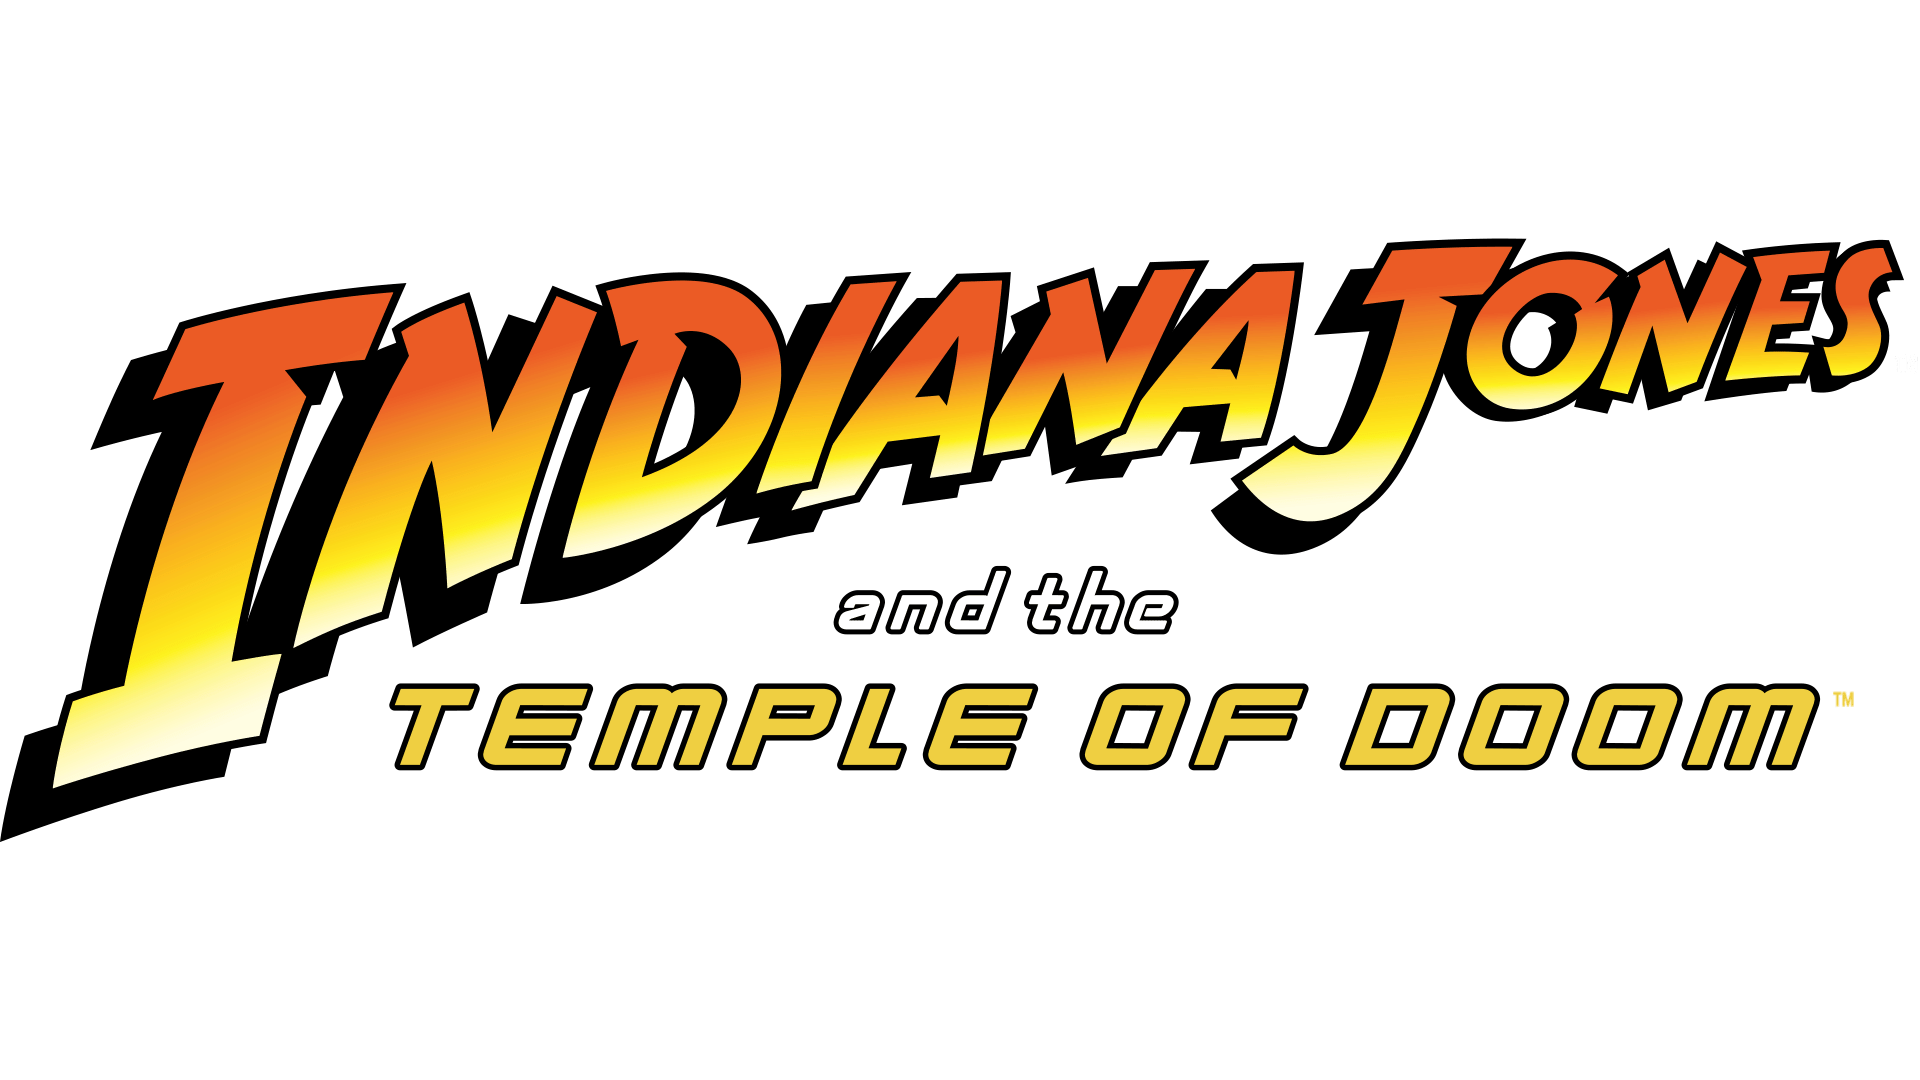 Indiana Jones and the Temple of Doom - Disney+ Hotstar